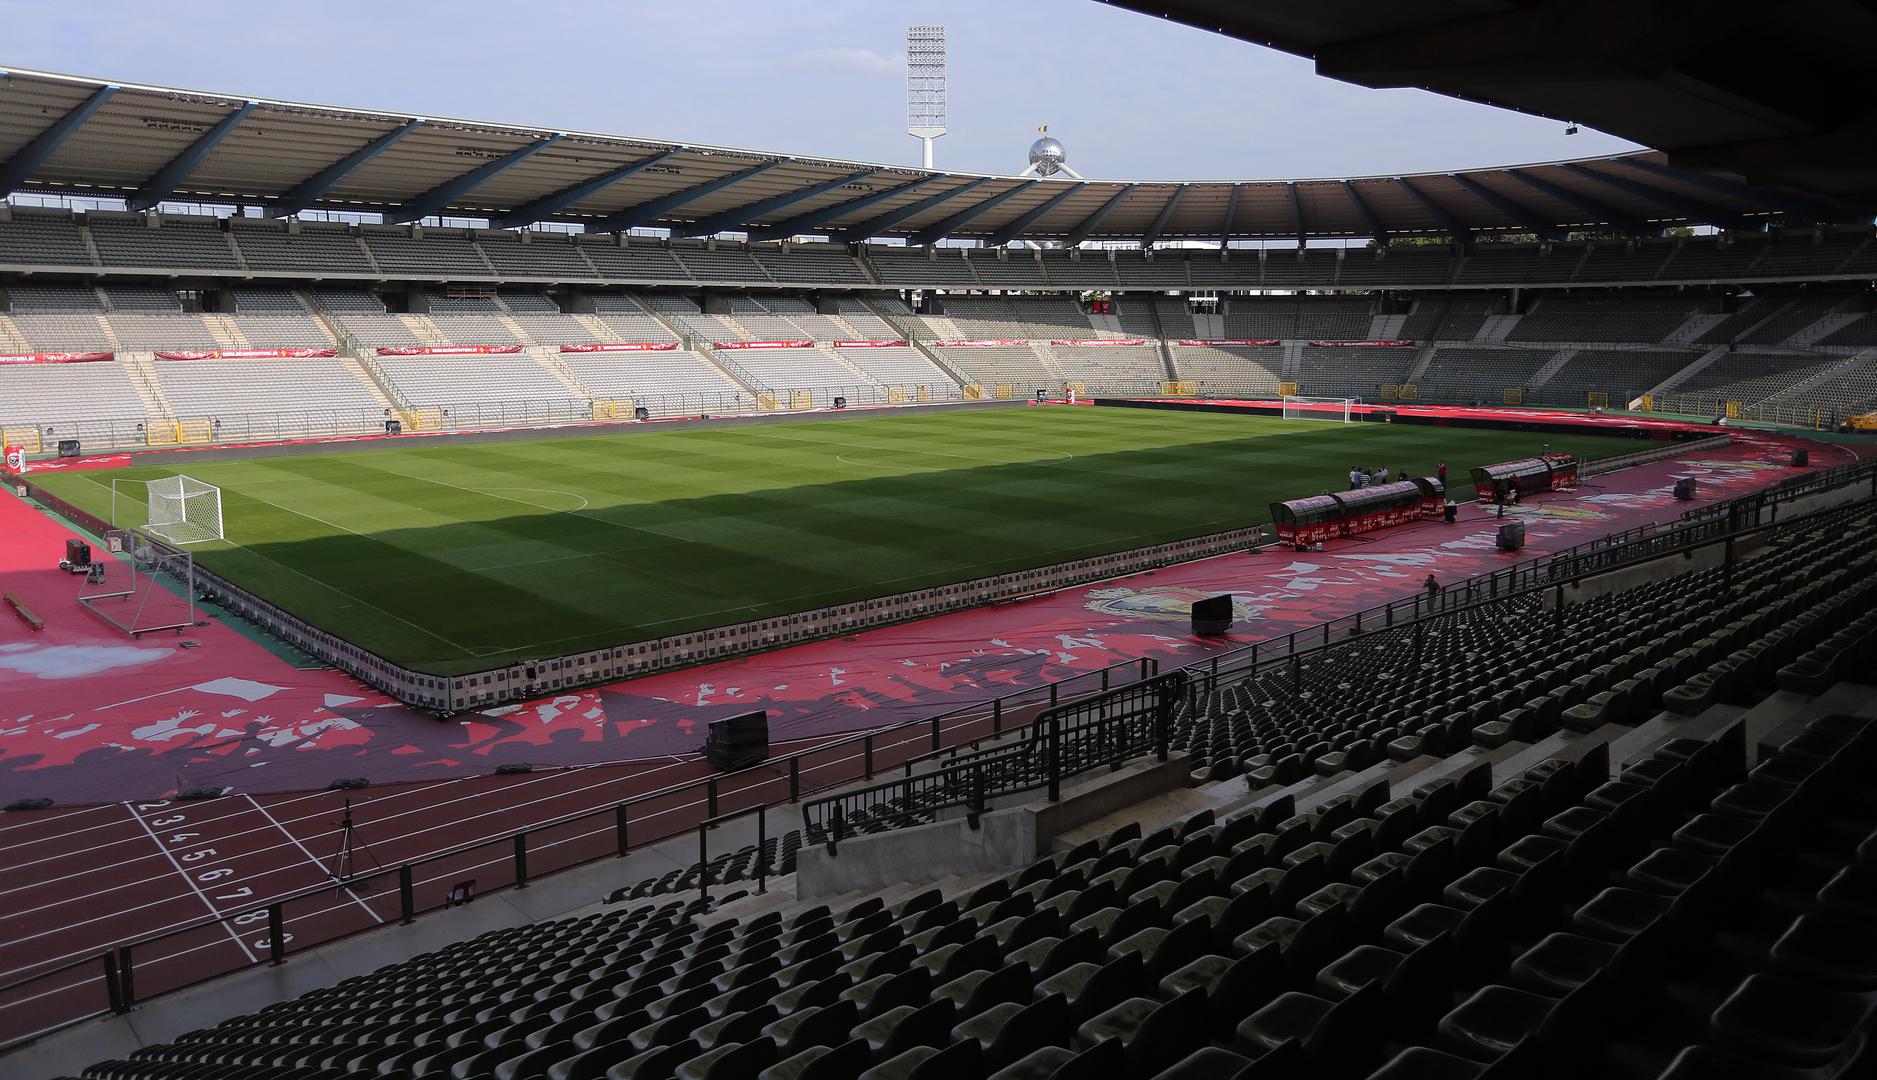 Stadion kralja Baudouina u Bruxellesu je izgrađen 1930., a renoviran 1995. godine za 37 milijuna eura